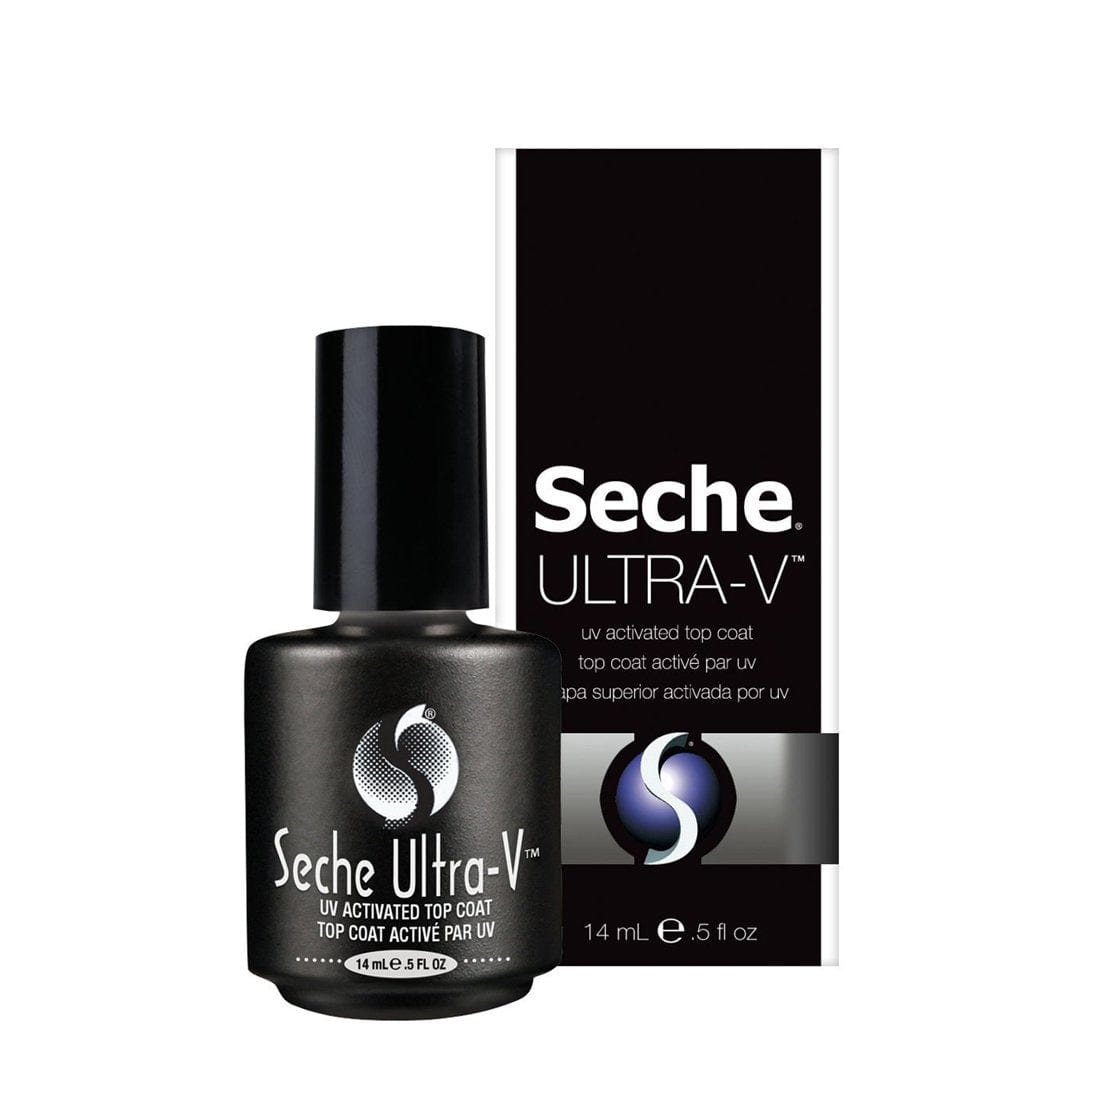 Seche - Ultra-V UV Activated Top Coat (5oz) - Jessica Nail & Beauty Supply - Canada Nail Beauty Supply - Top Coat